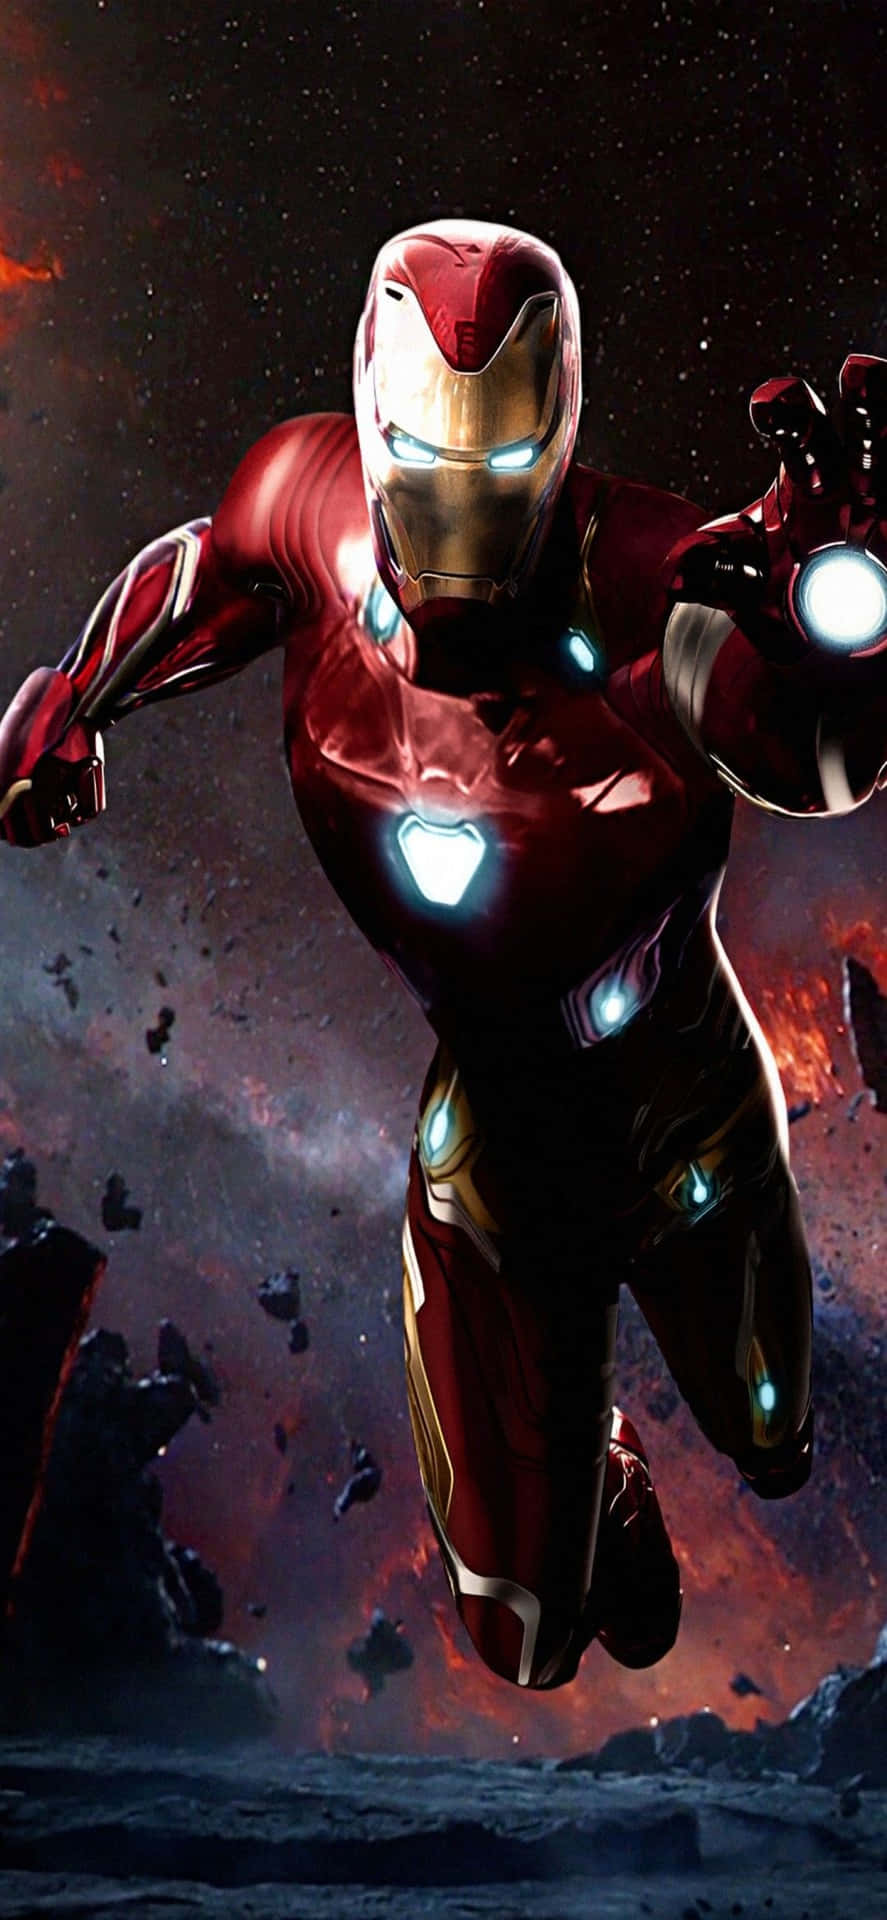 Iphonex Iron Man Hintergrund Iron Man Zeigt Mit Dem Blaster